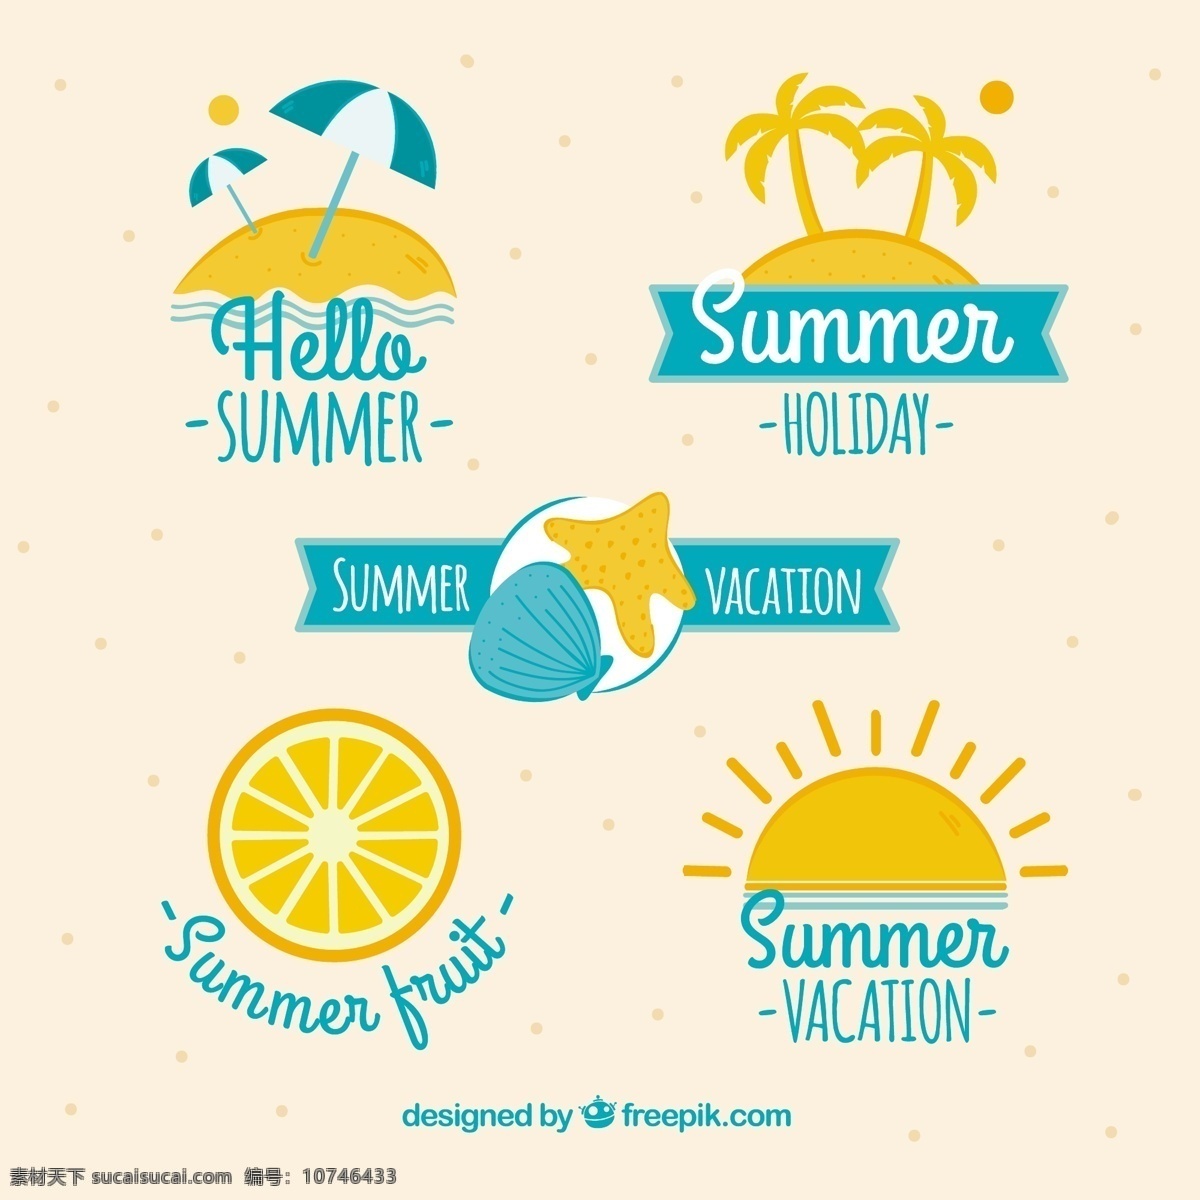 夏季 元素 装饰 贴纸 图标 夏季元素的 装饰贴纸